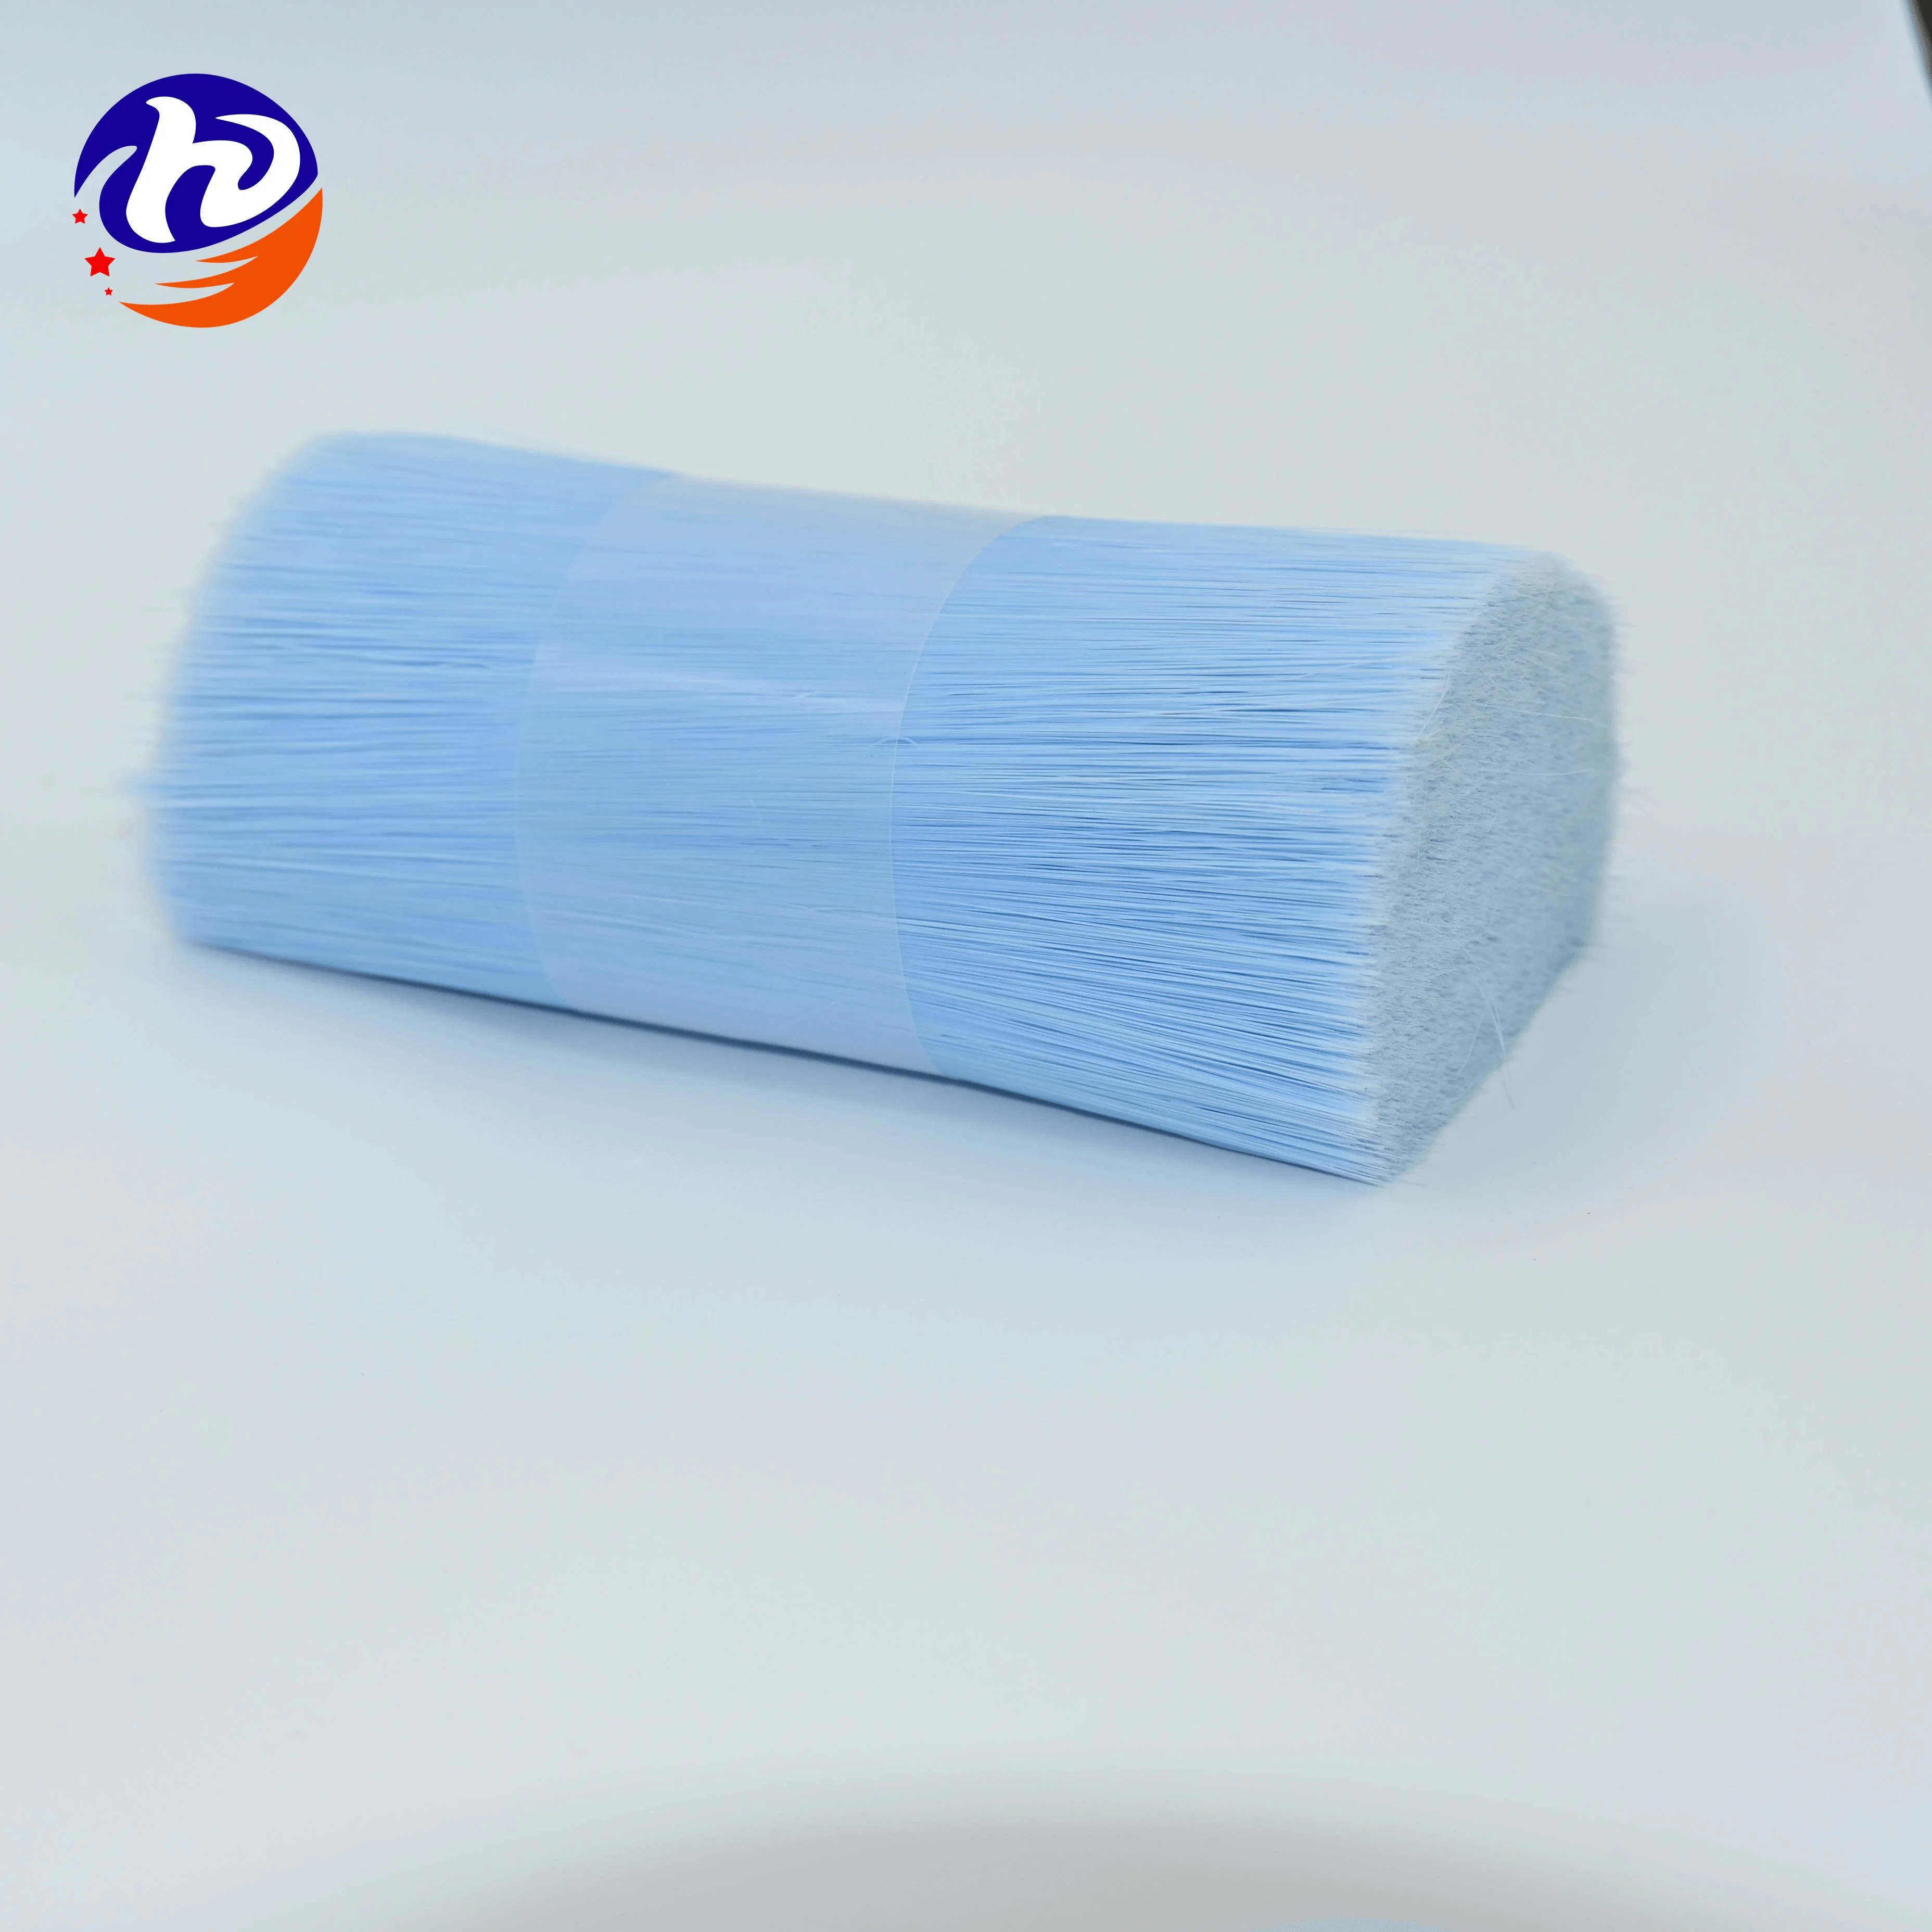 Brosse synthétique filament de qualité Super Mini Bébé brosse à dents poils doux Multi fibre synthétique de couleur pour brosse de nettoyage